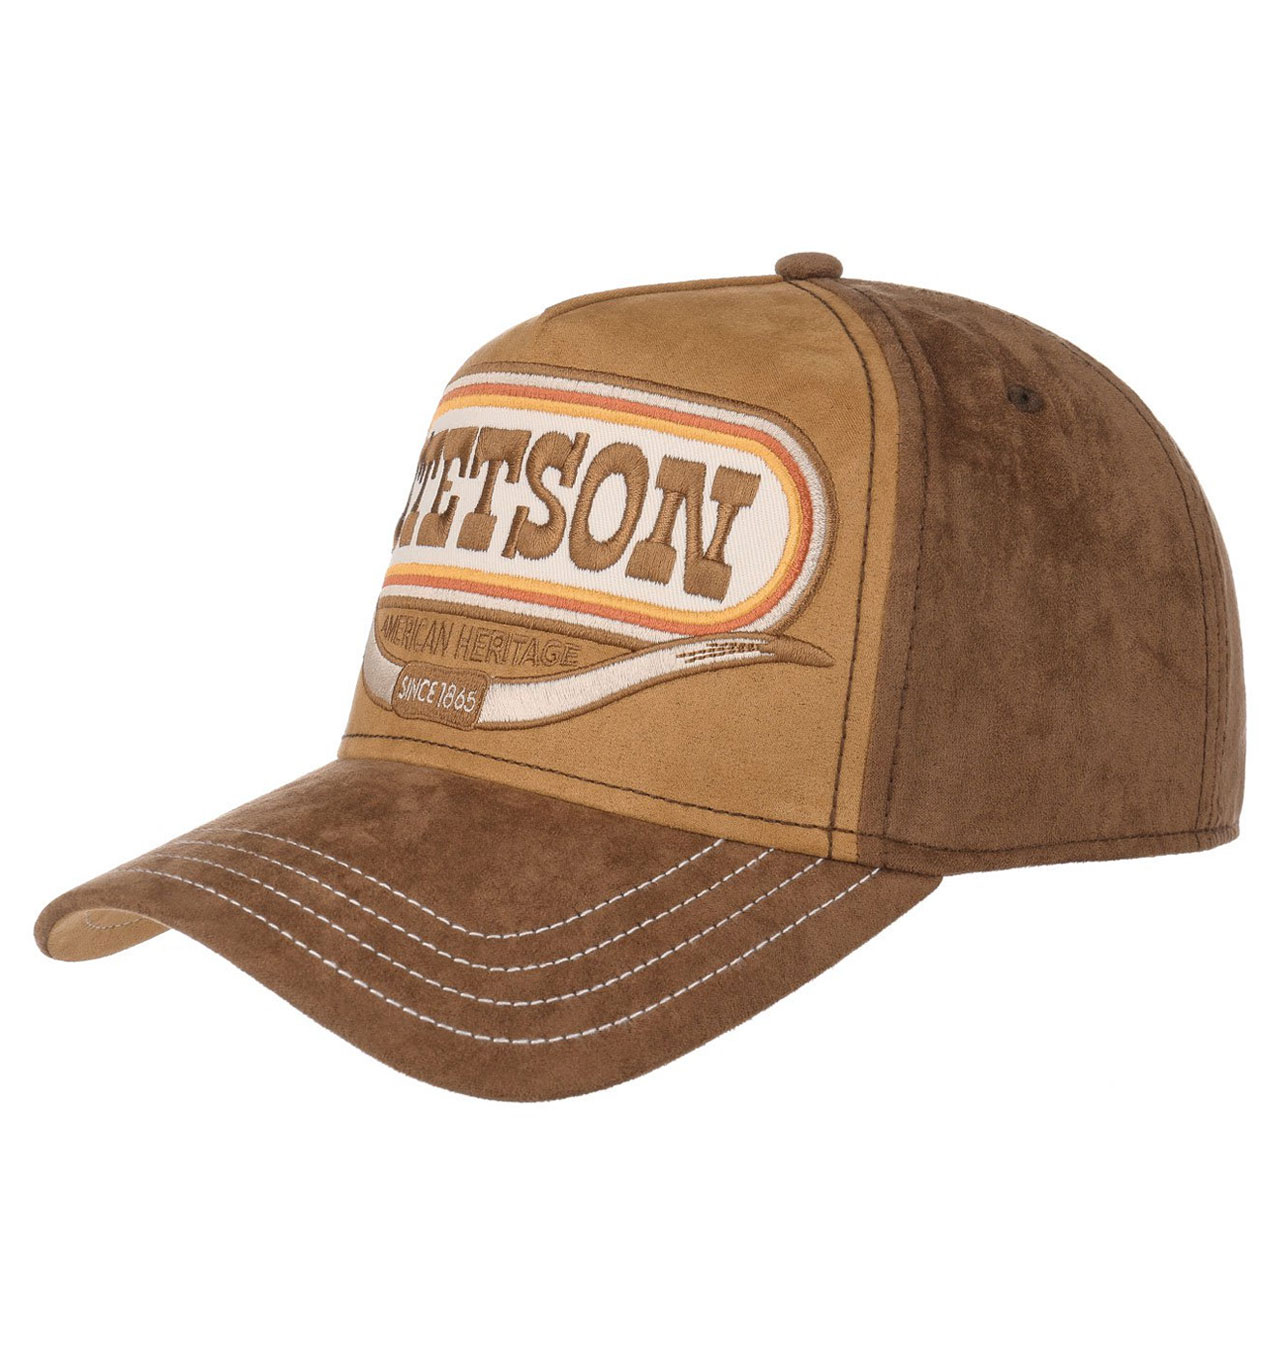 Stetson - Buffalo Horn Trucker Cap - Brown